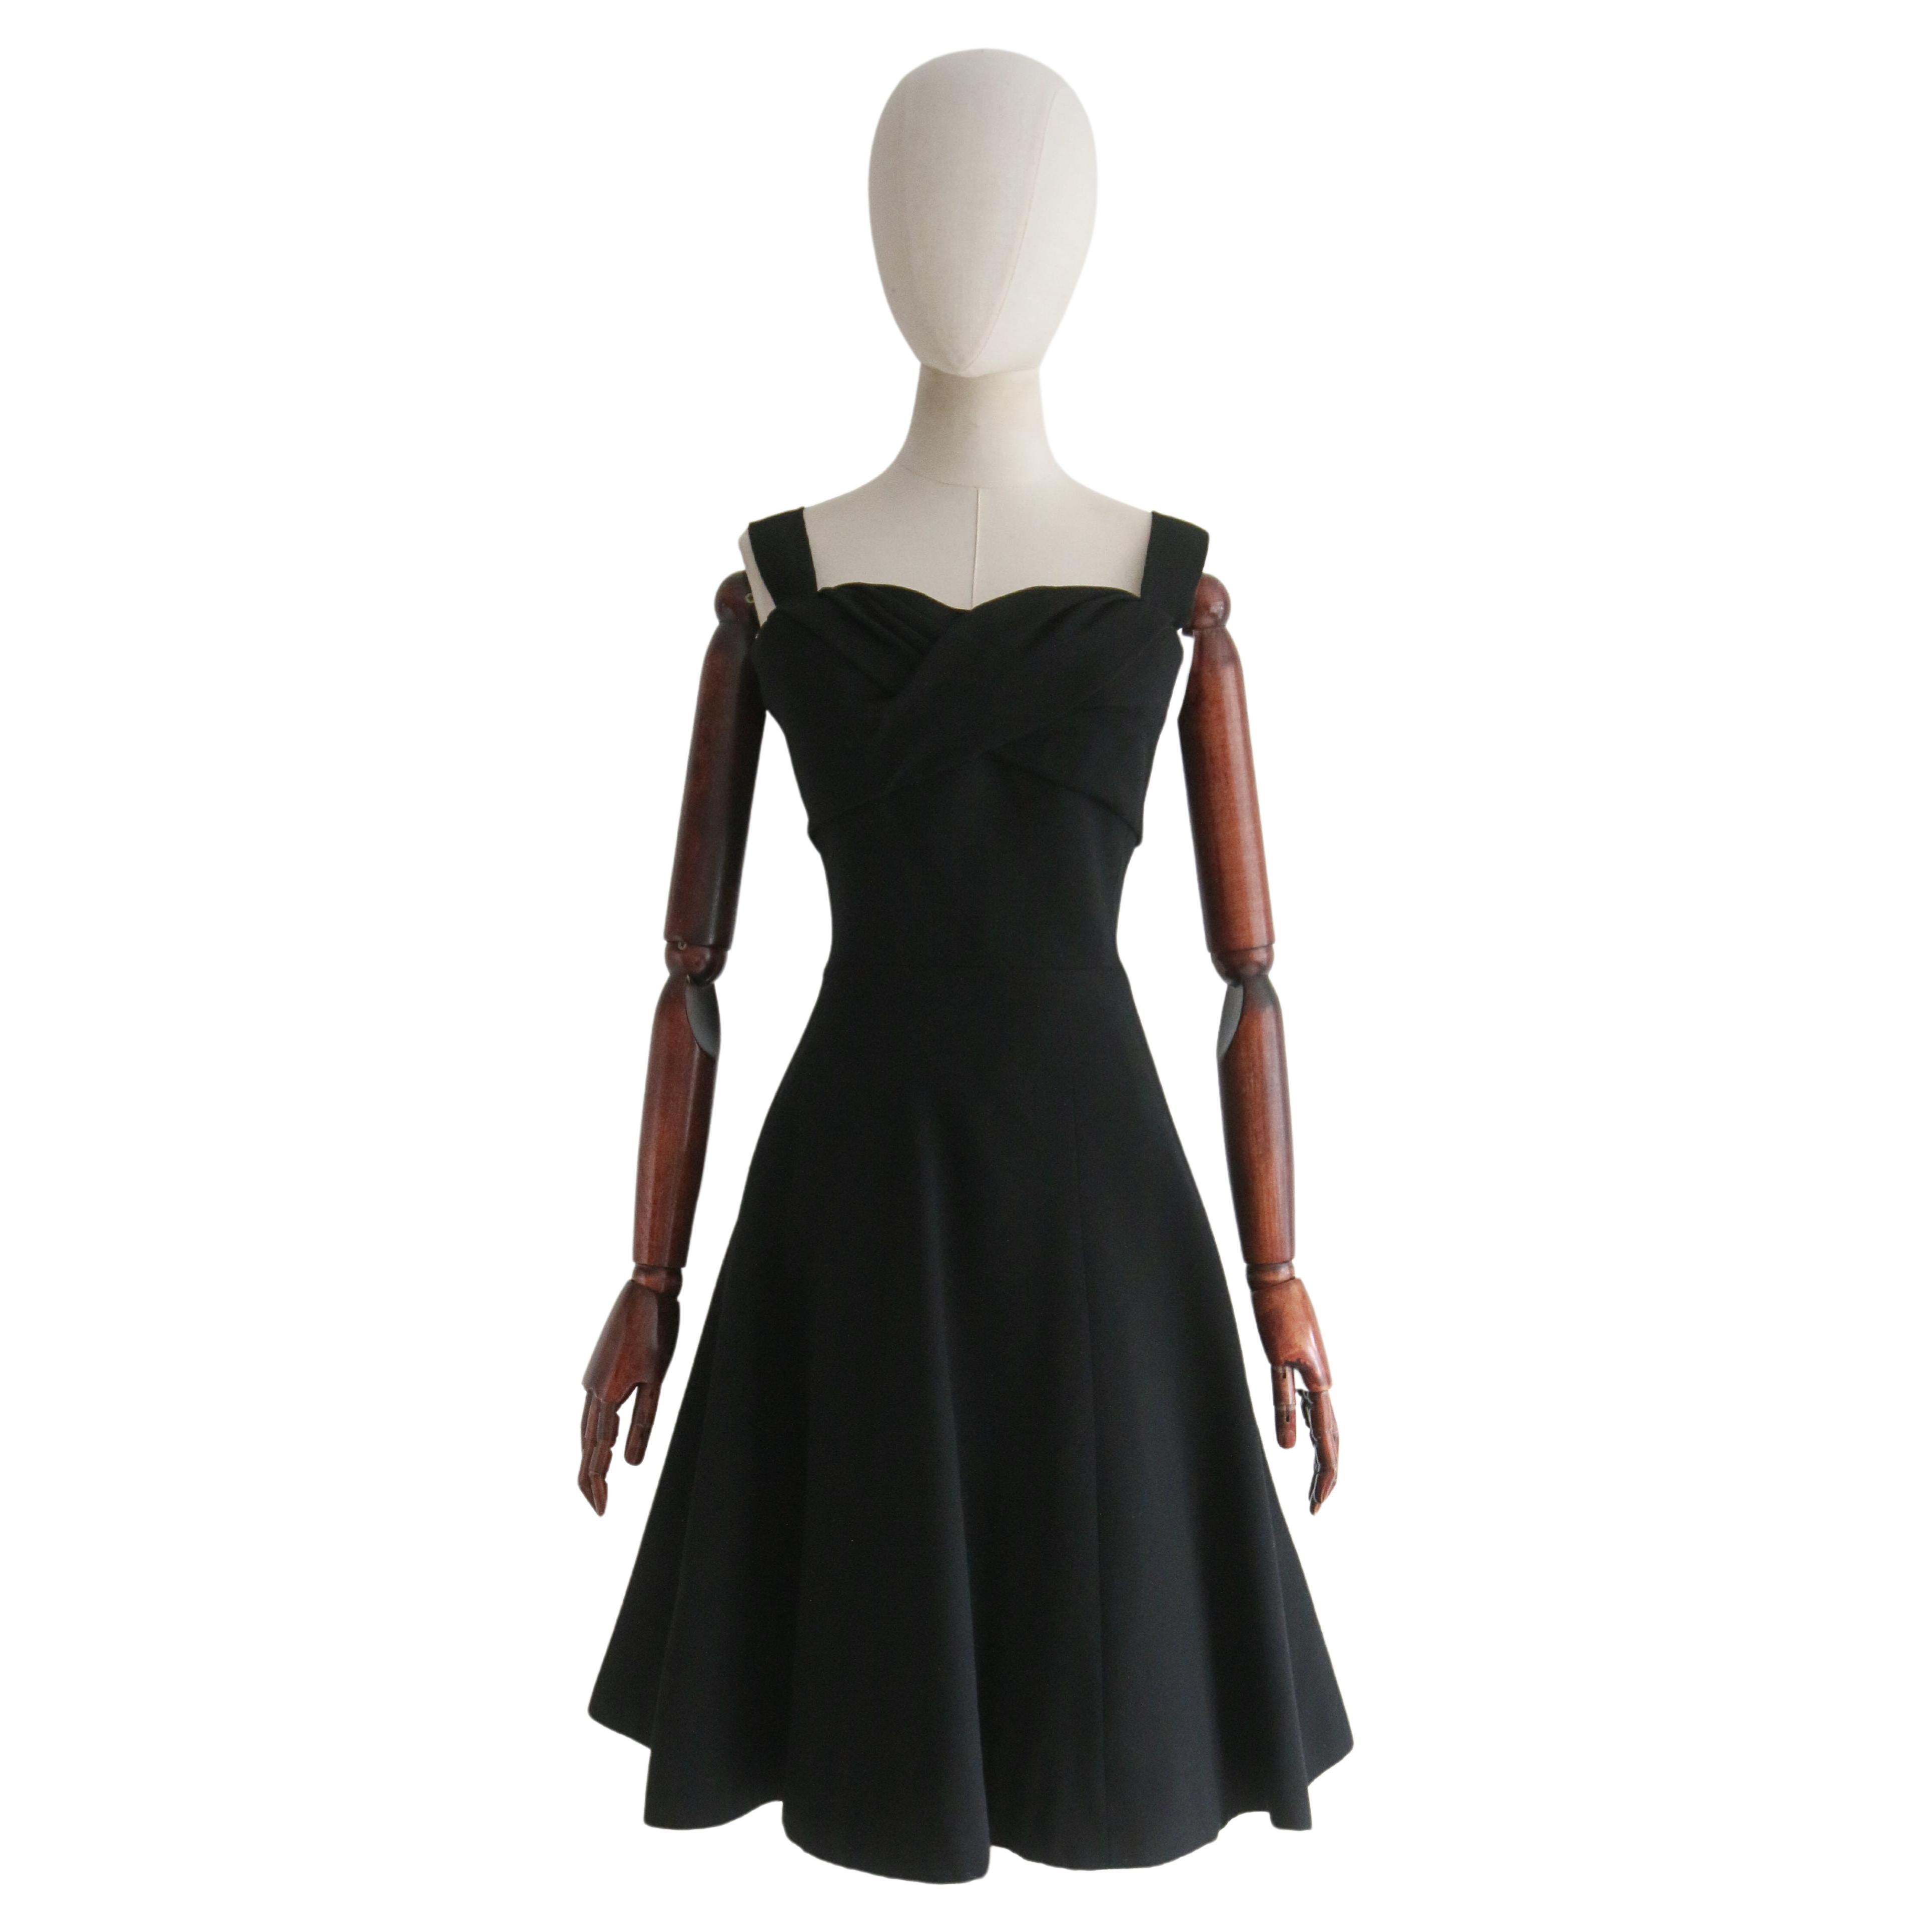  Vintage Late 1950's Black Christian Dior Dress UK 8 US 4 For Sale